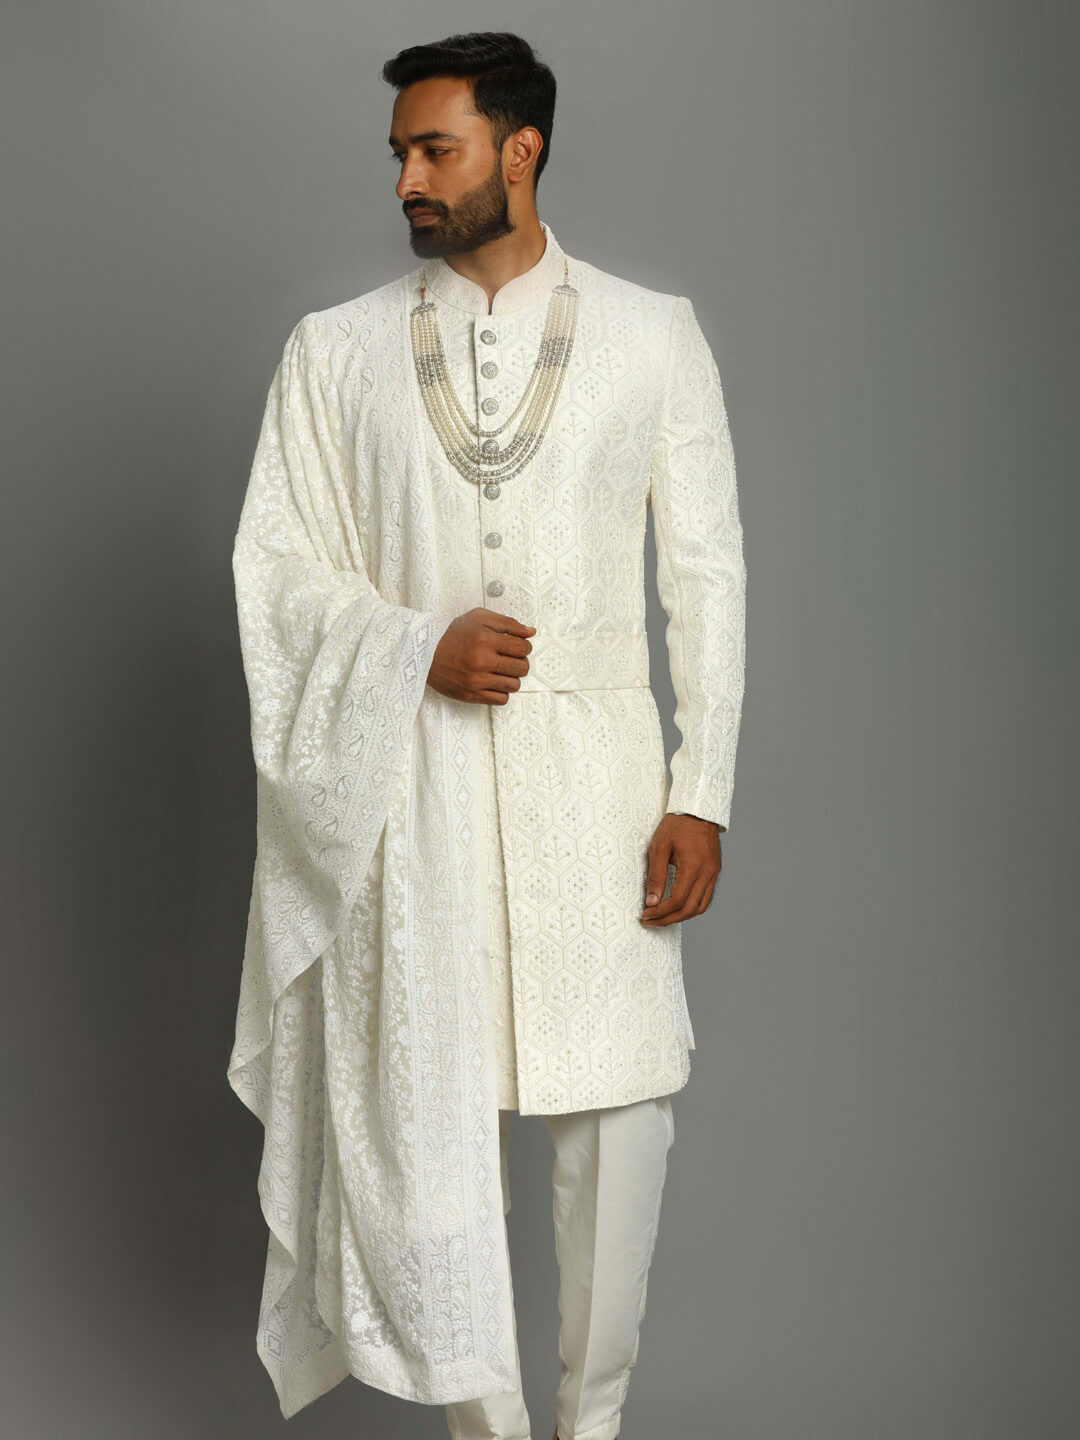 displaying image of White Shiny Pure Heavy Groom Sherwani